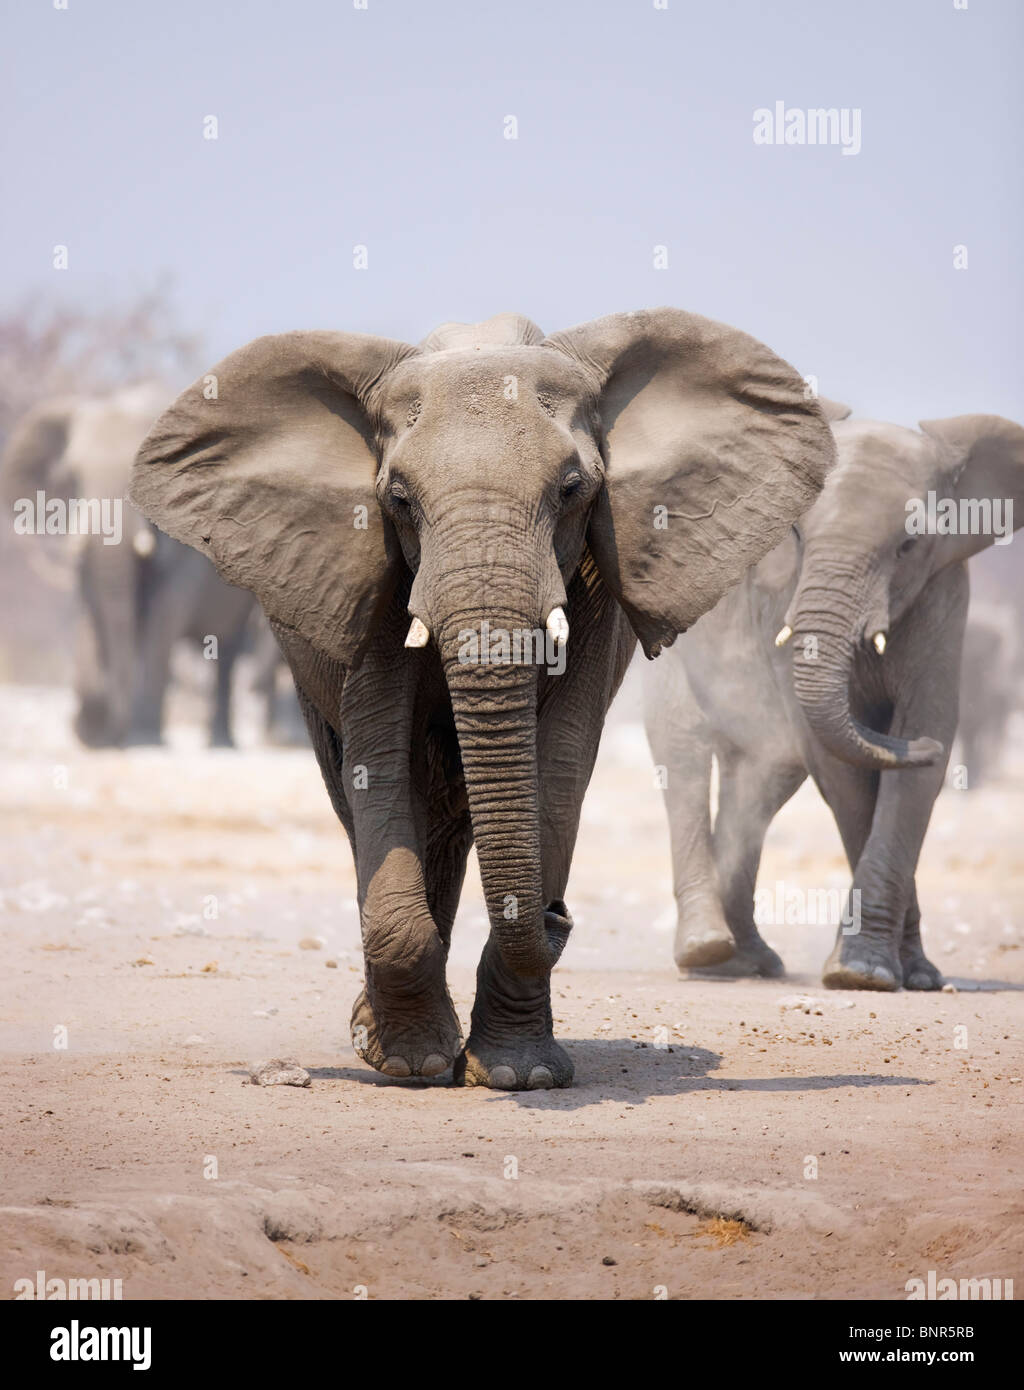 Elefant nähert sich über staubigen Sand mit Herde nach im Hintergrund (Etosha-Wüste) Stockfoto